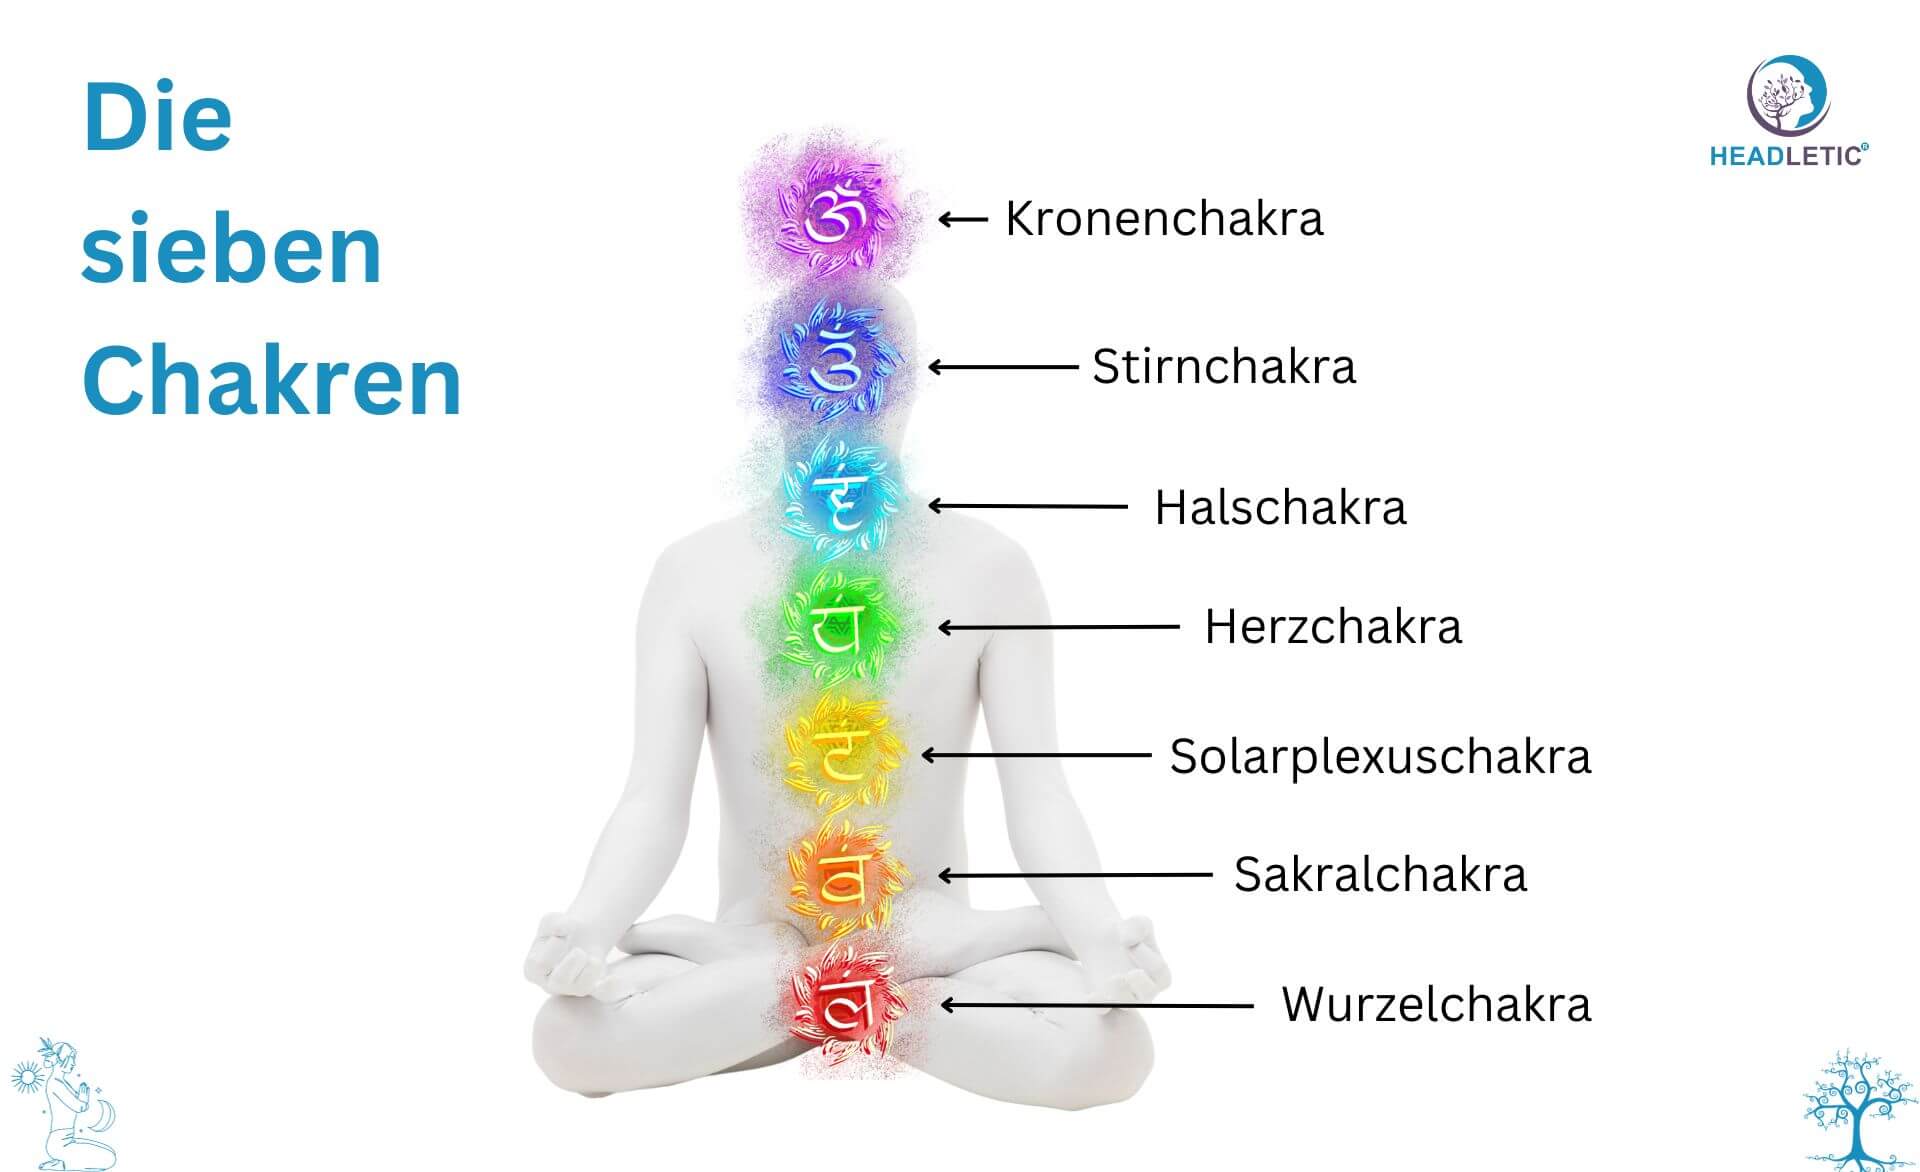 Die sieben Chakren des menschlichen Körpers, einschließlich einer Anleitung zur Wurzelchakra-Meditation.